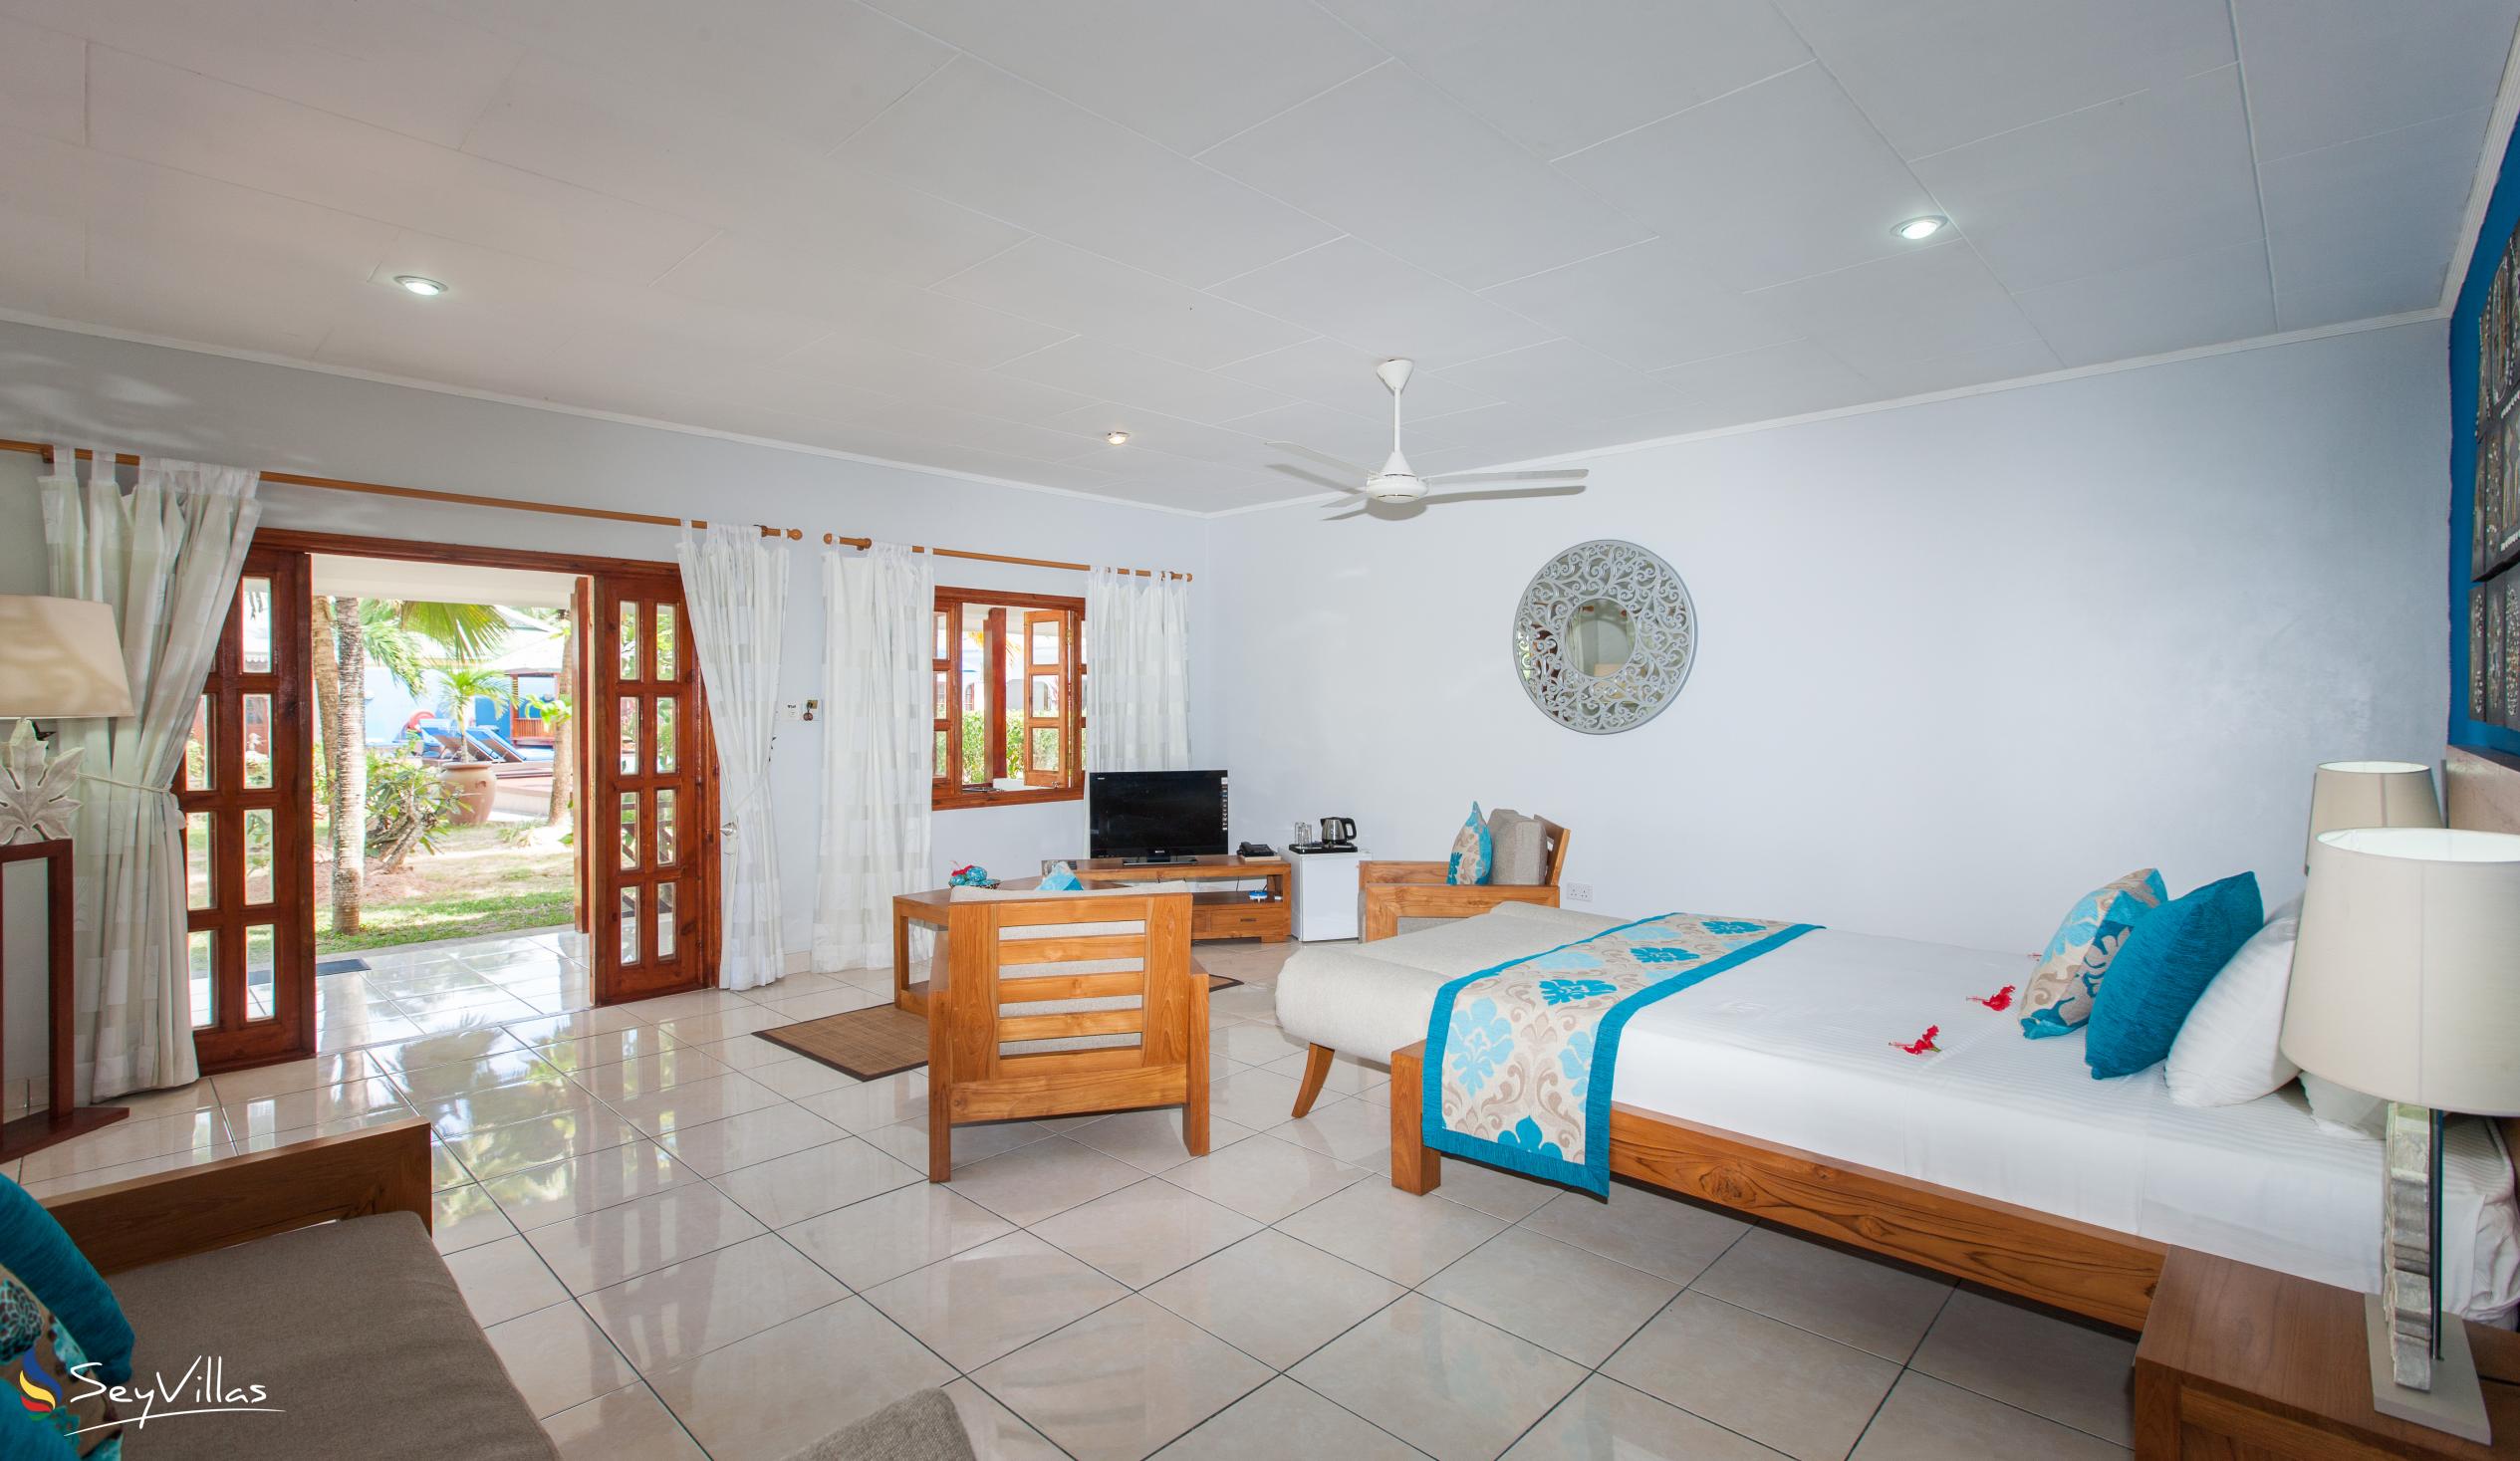 Foto 36: Villas de Mer - Suite Junior - Praslin (Seychelles)